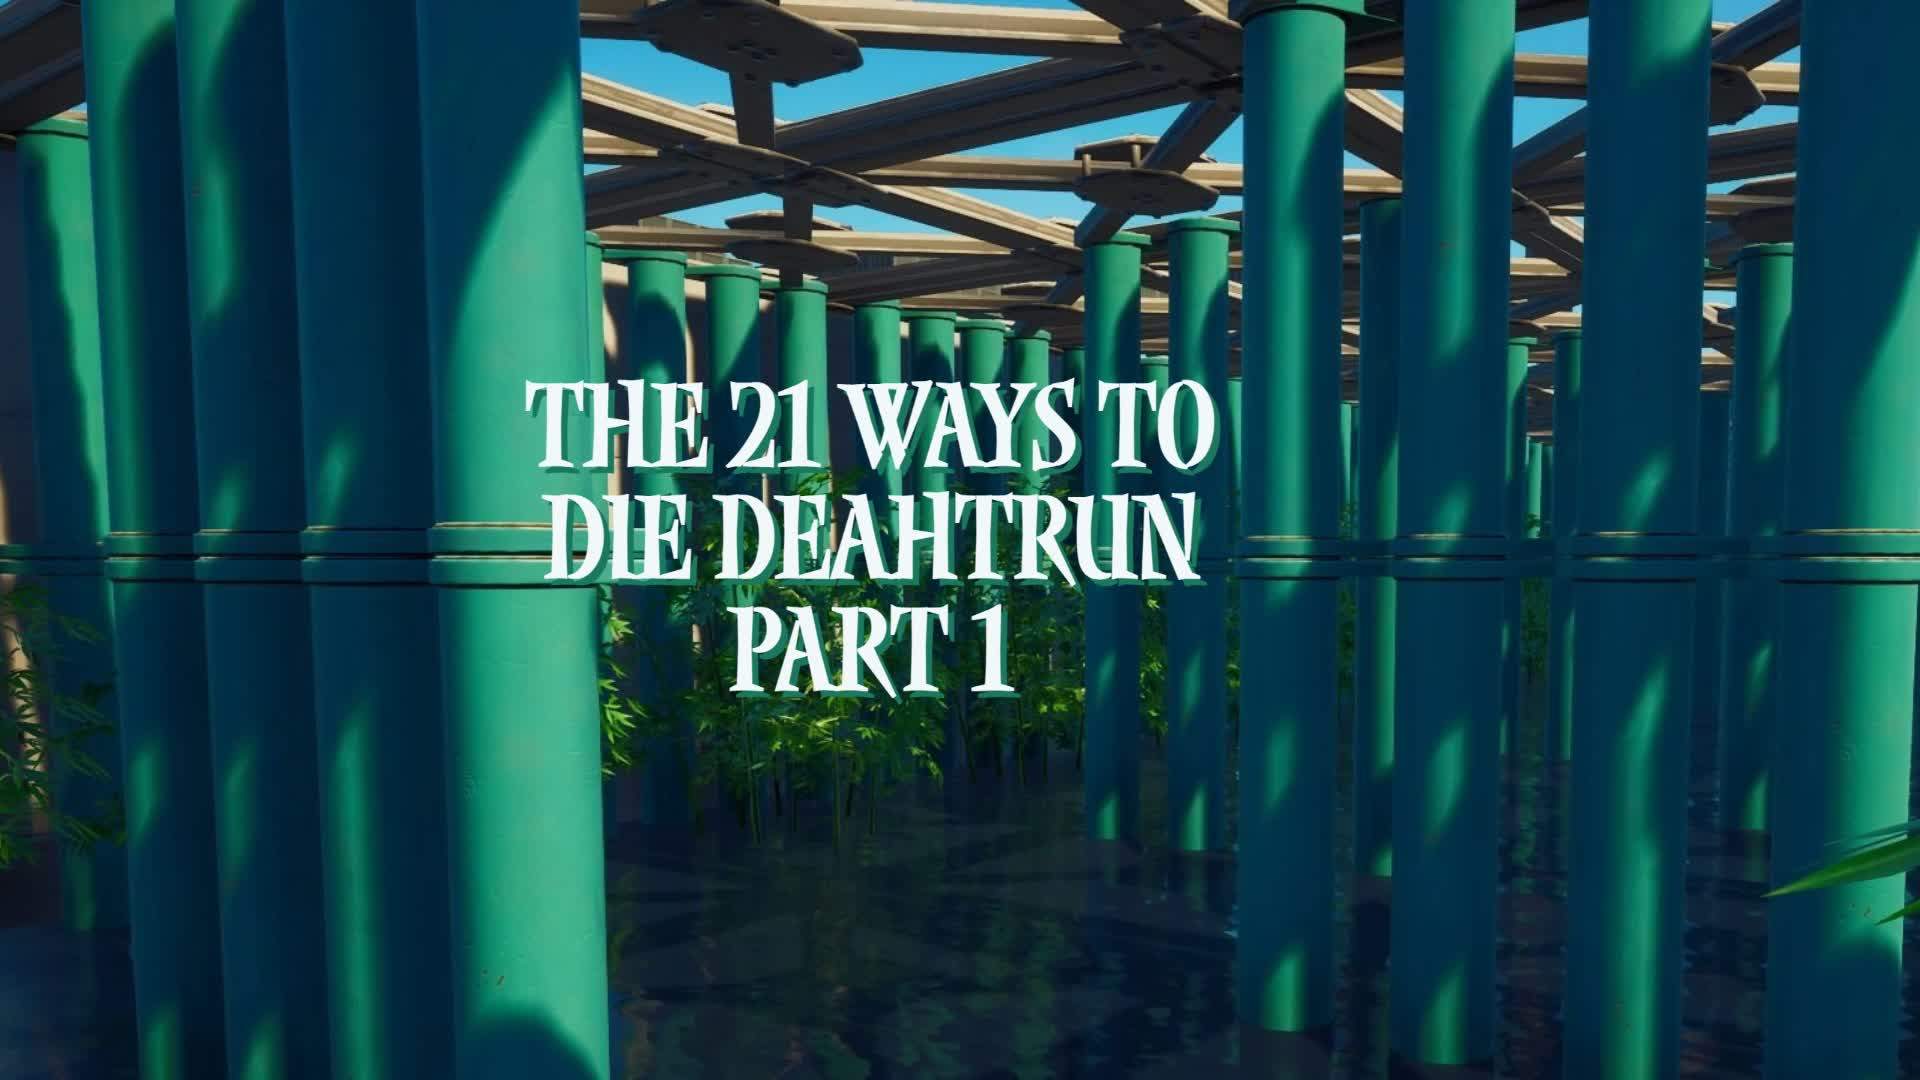 The 21 ways to die deathrun part 1